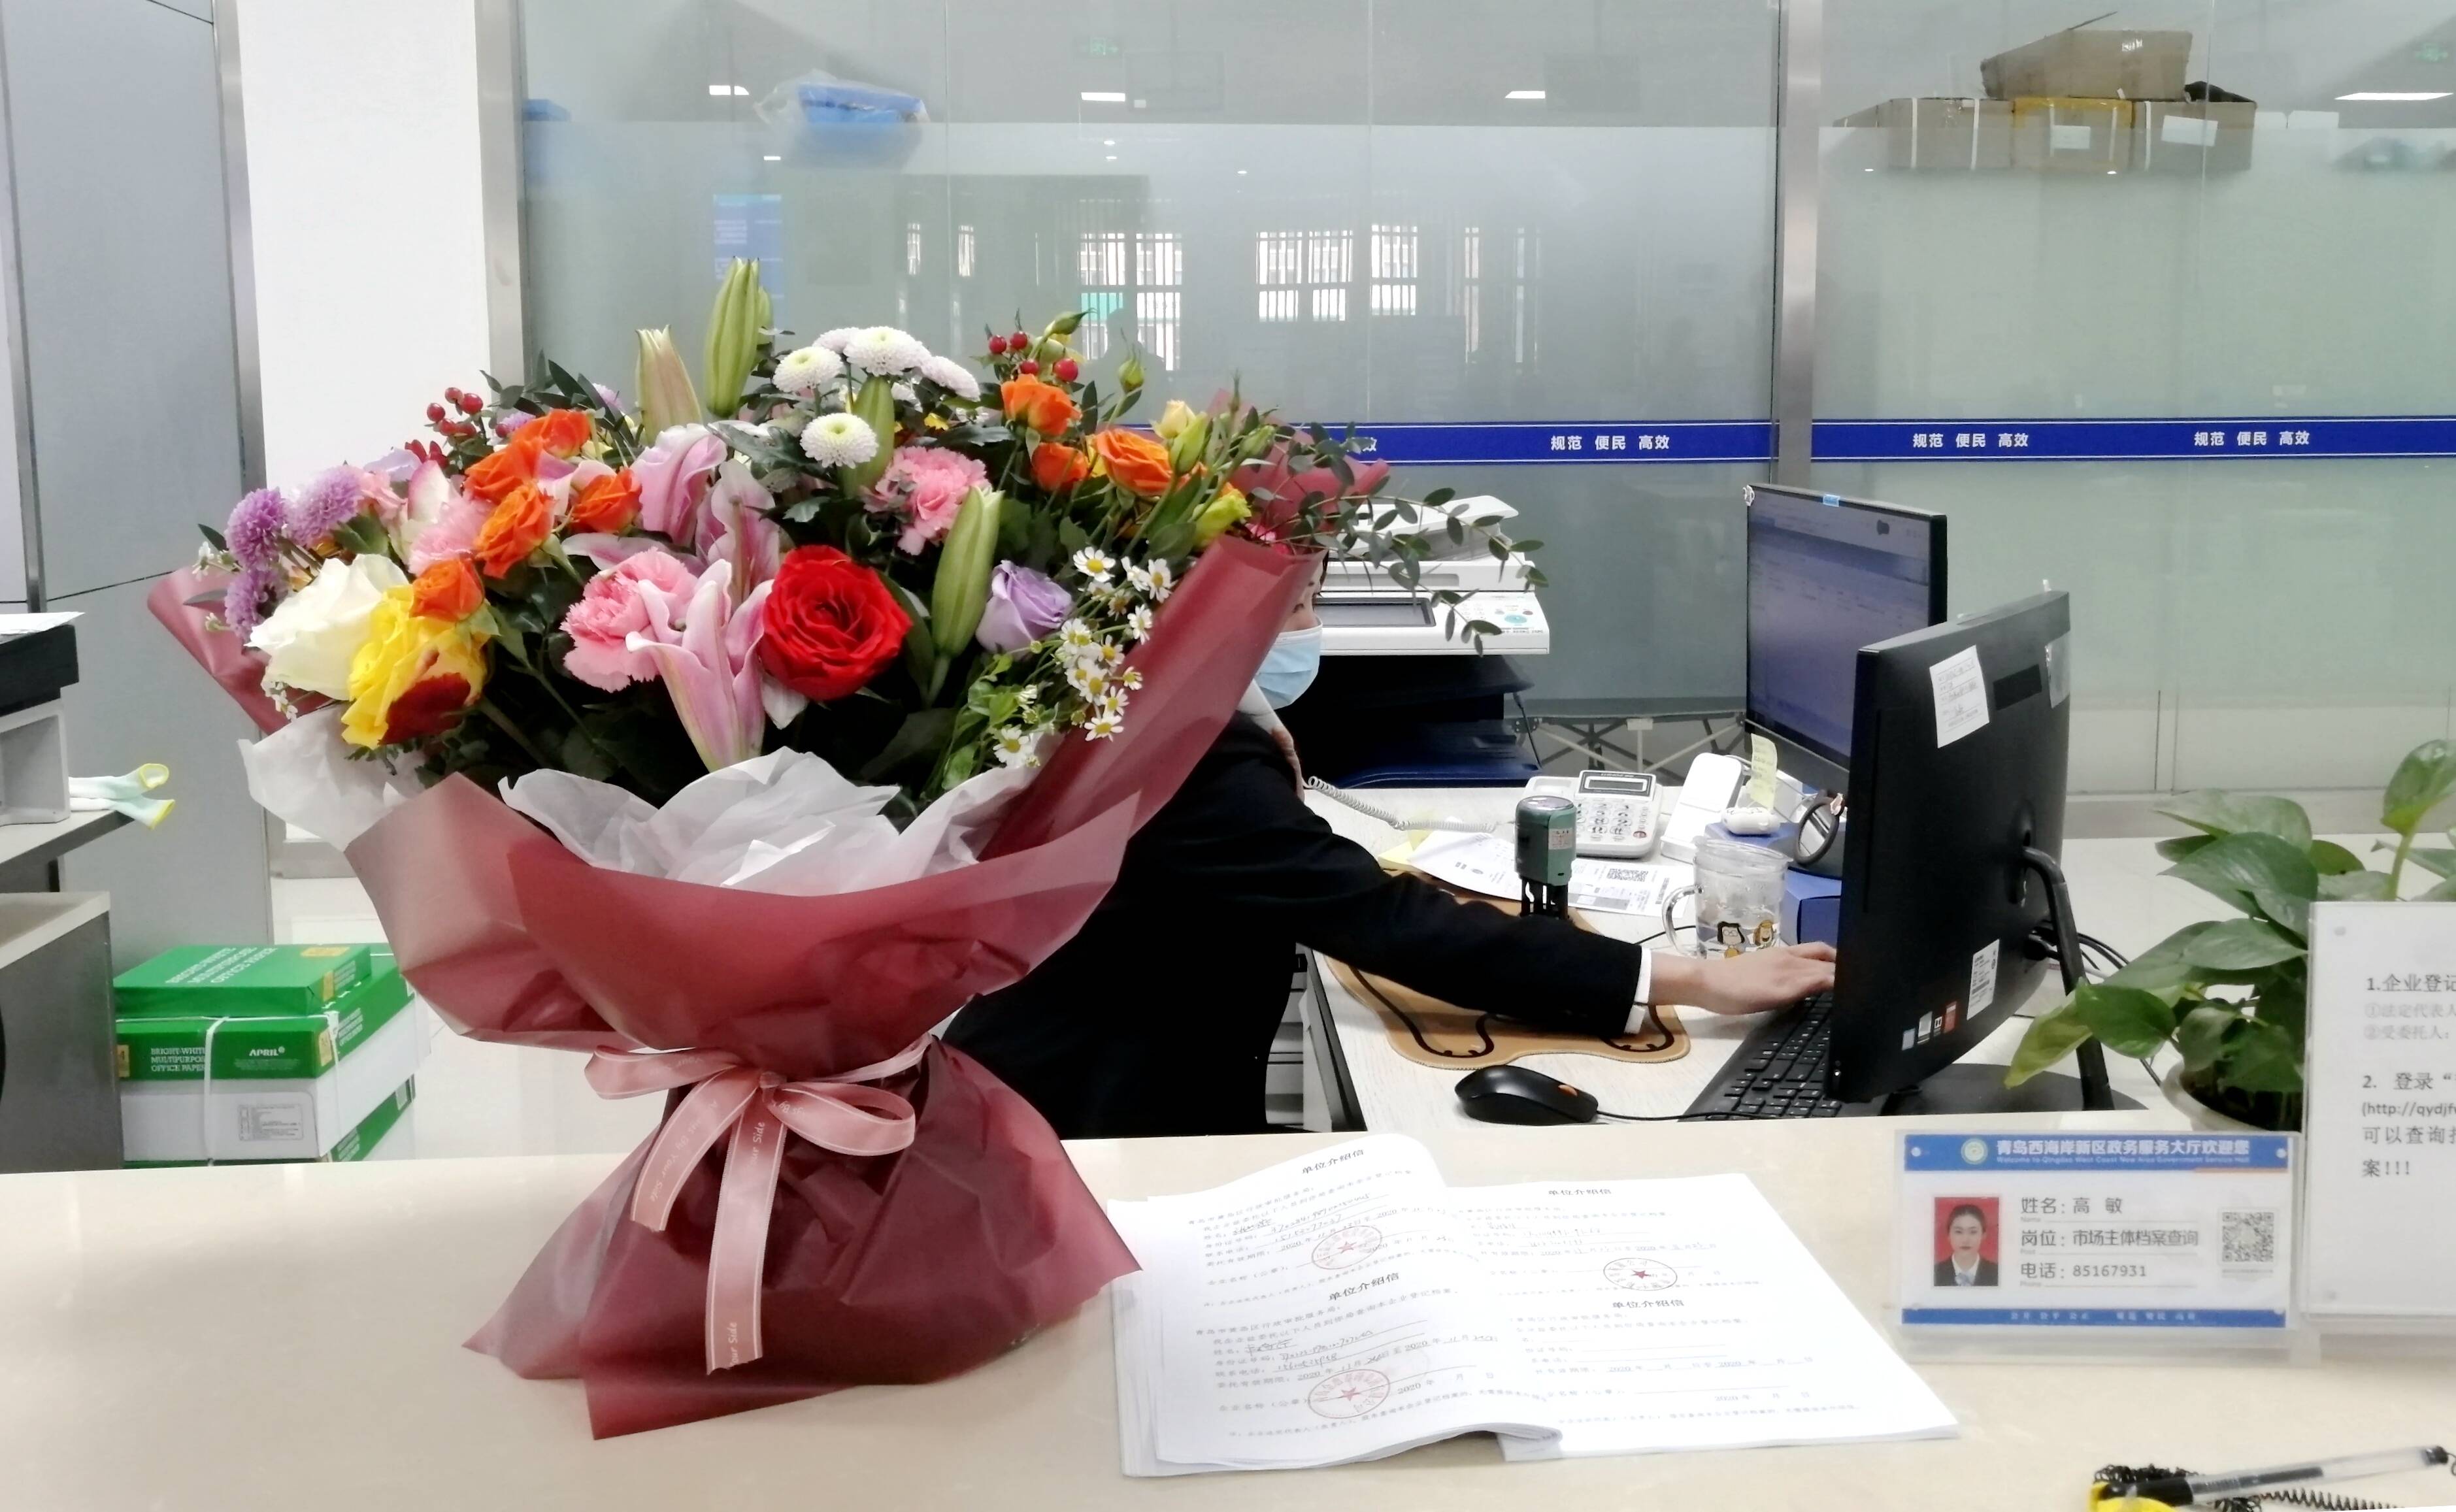 市民为区政务服务大厅档案查询窗口送来鲜花，感谢工作人员热心周到的服务。(胡全福 摄)